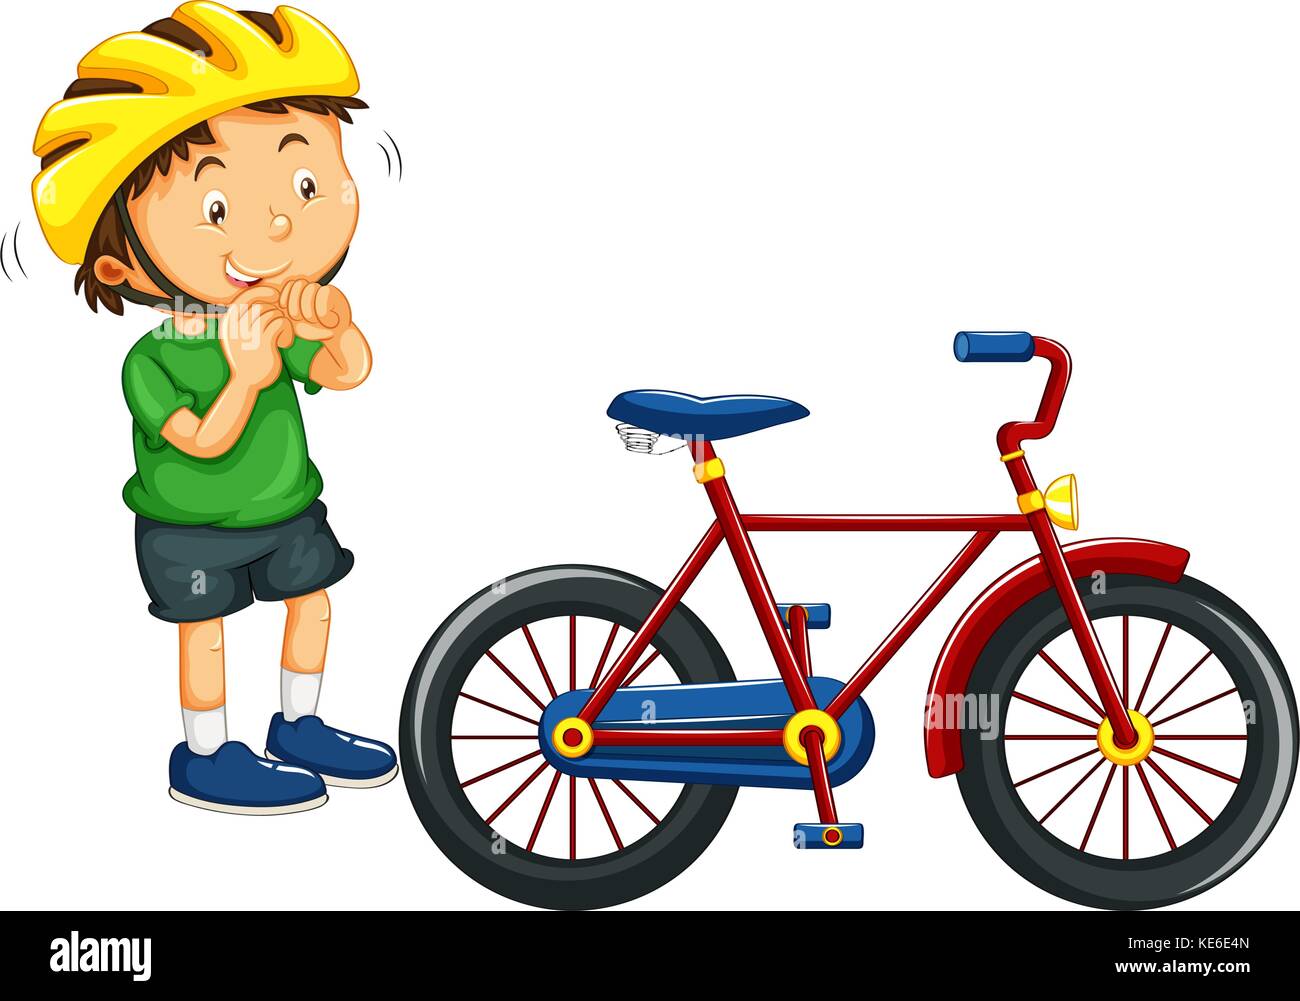 Bicicleta de estudiante Imágenes vectoriales de stock - Página 2 - Alamy